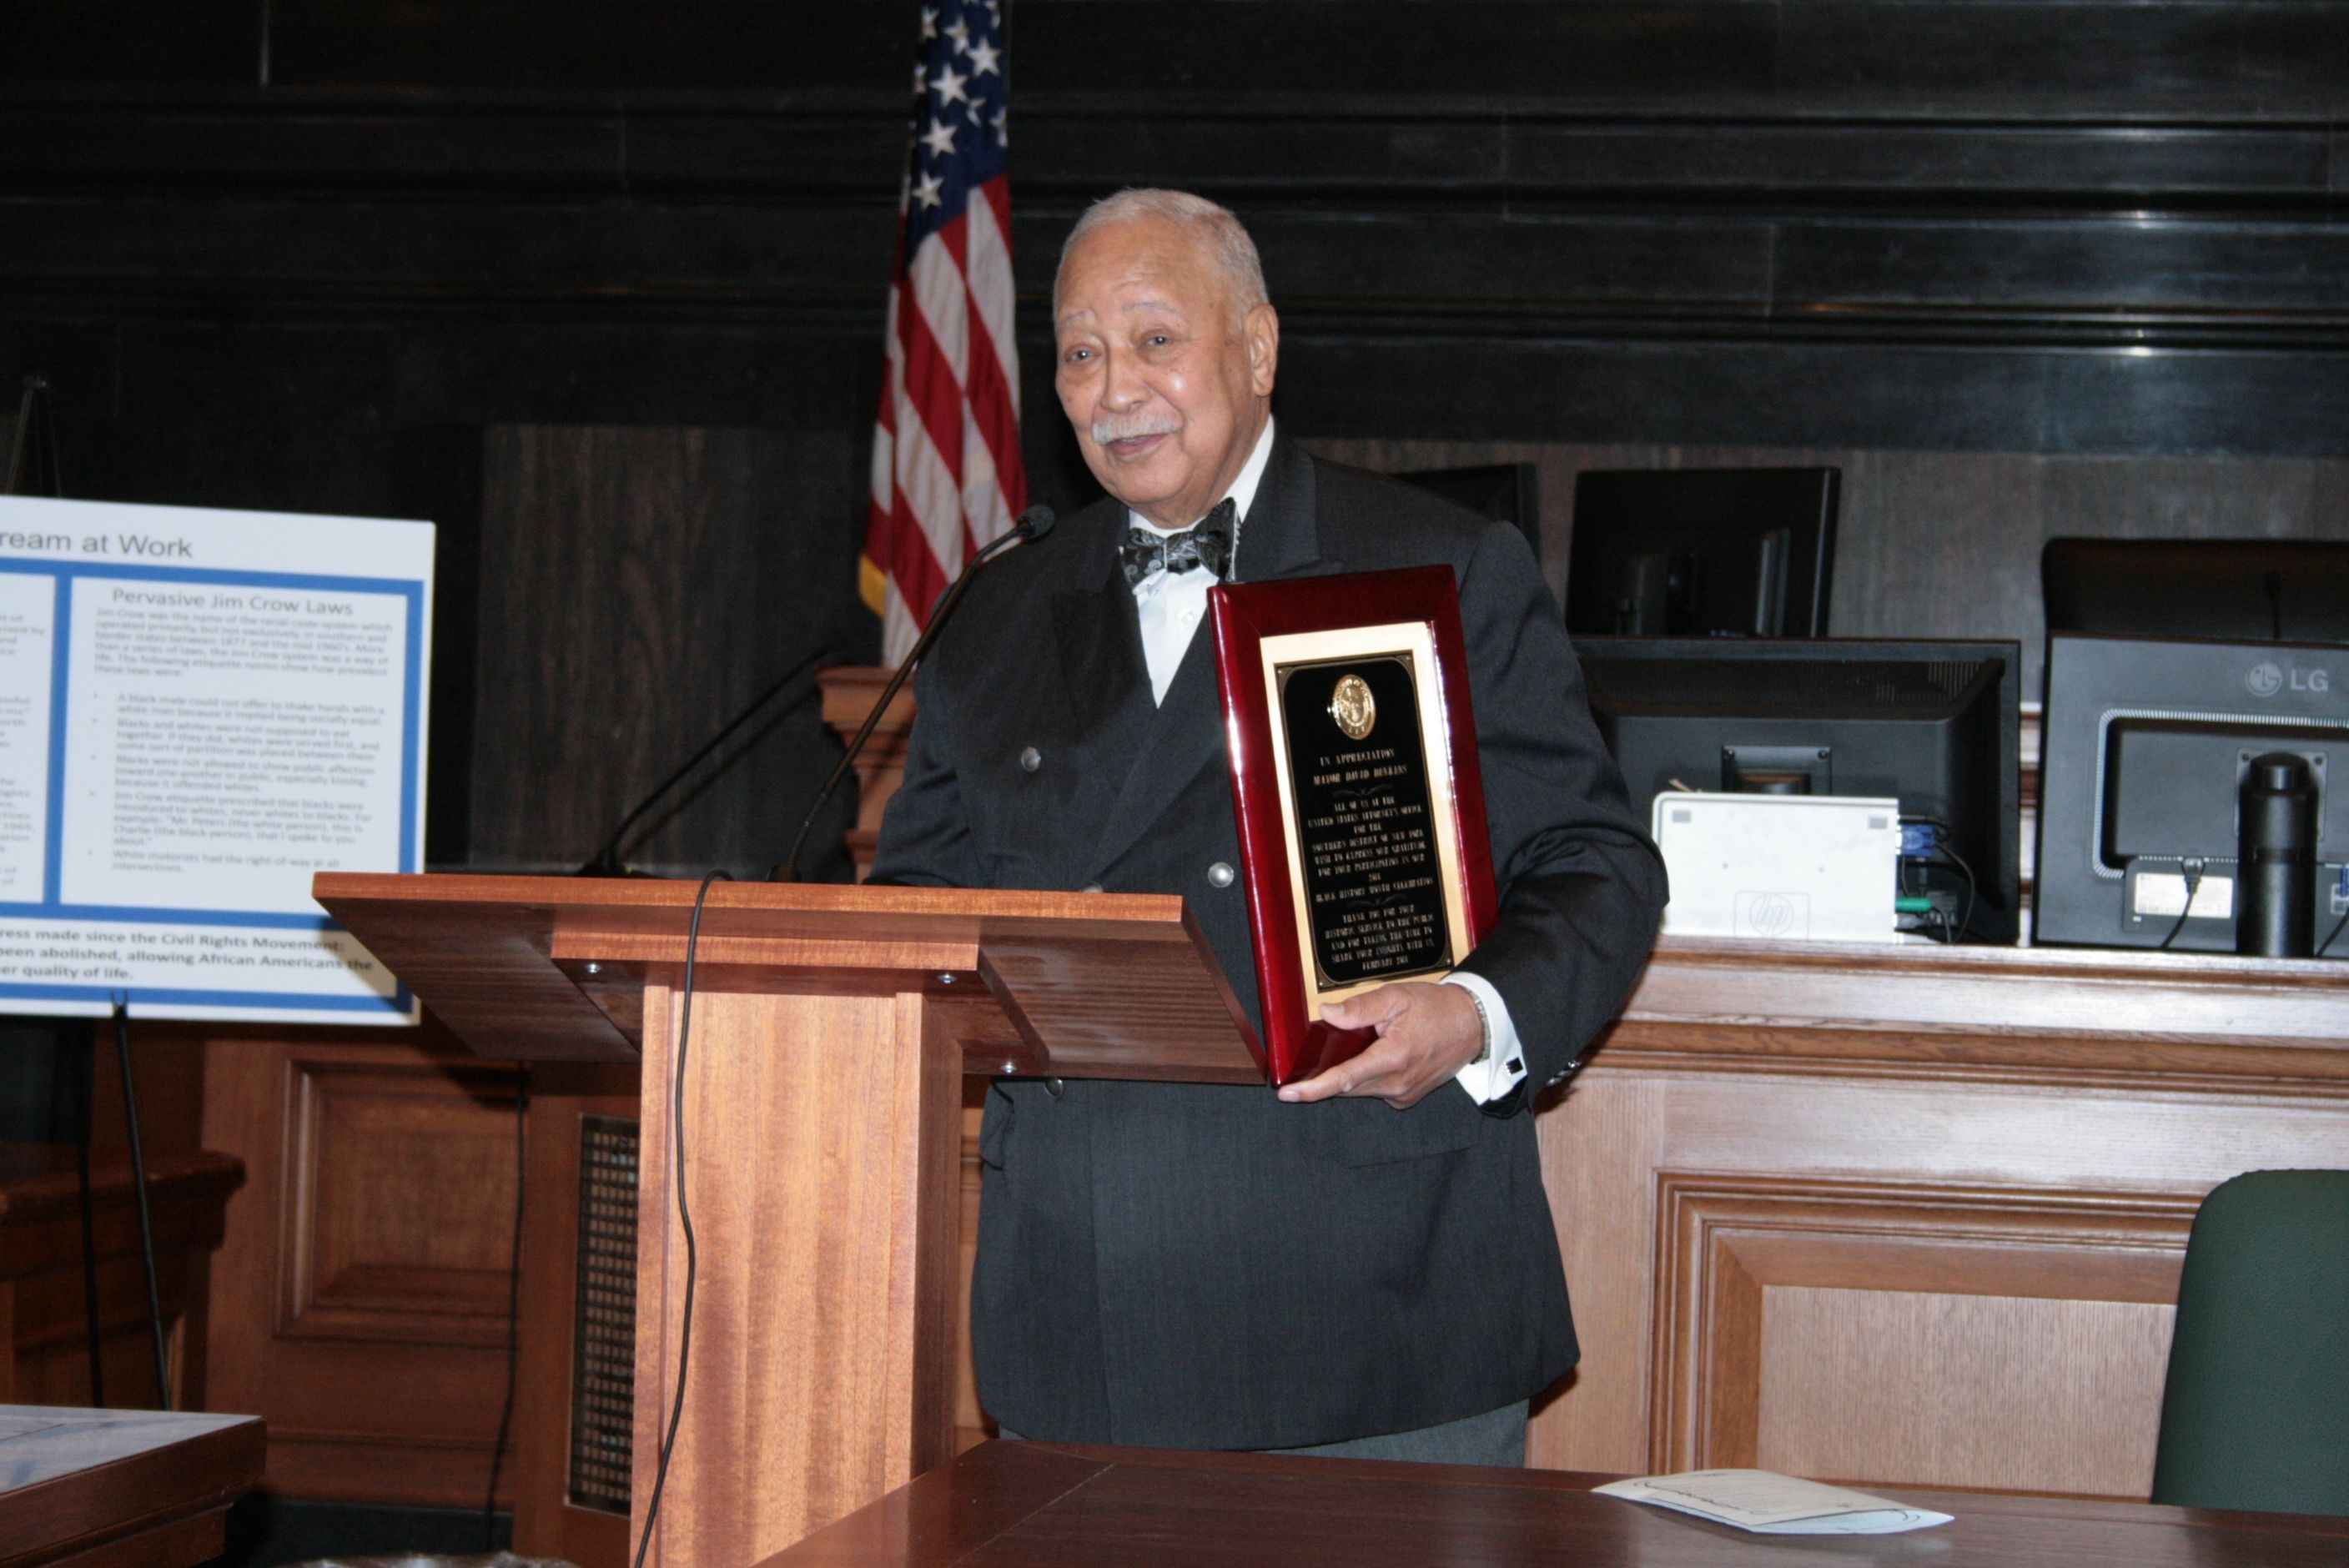 Mayor David Dinkins after receiving plaque